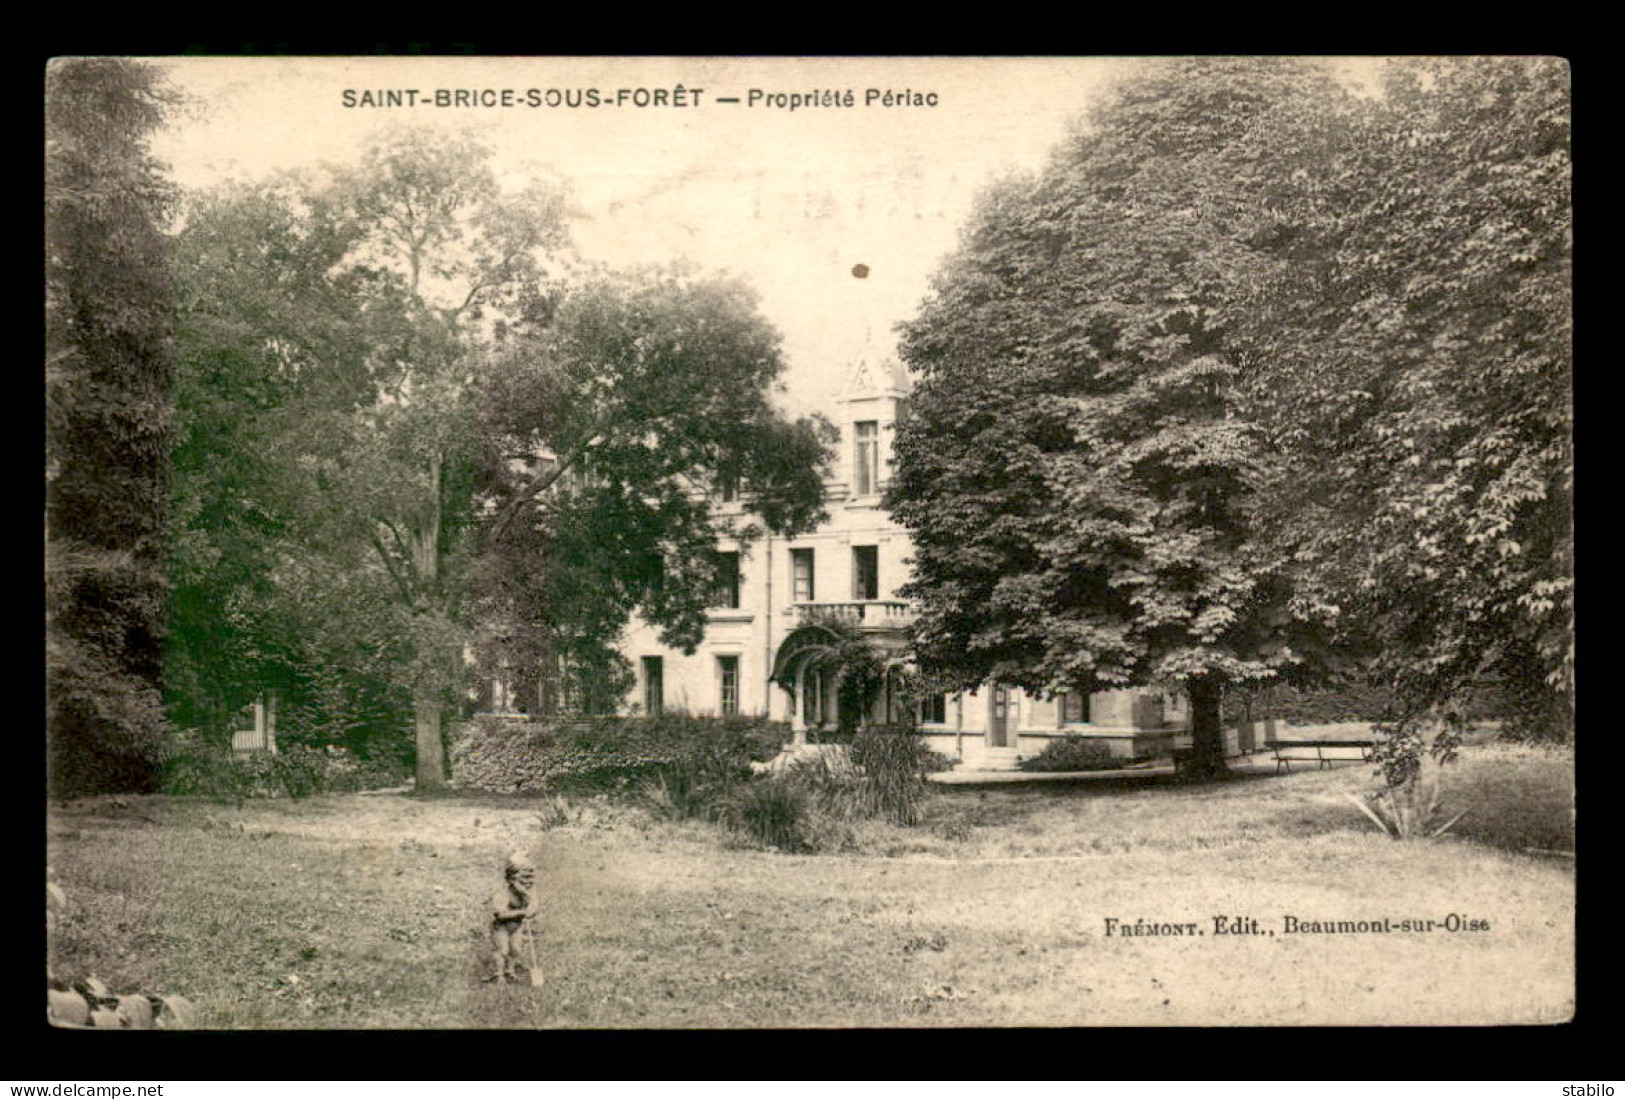 95 - SAINT-BRICE-SOUS-FORET - PROPRIETE PERIAC - Saint-Brice-sous-Forêt